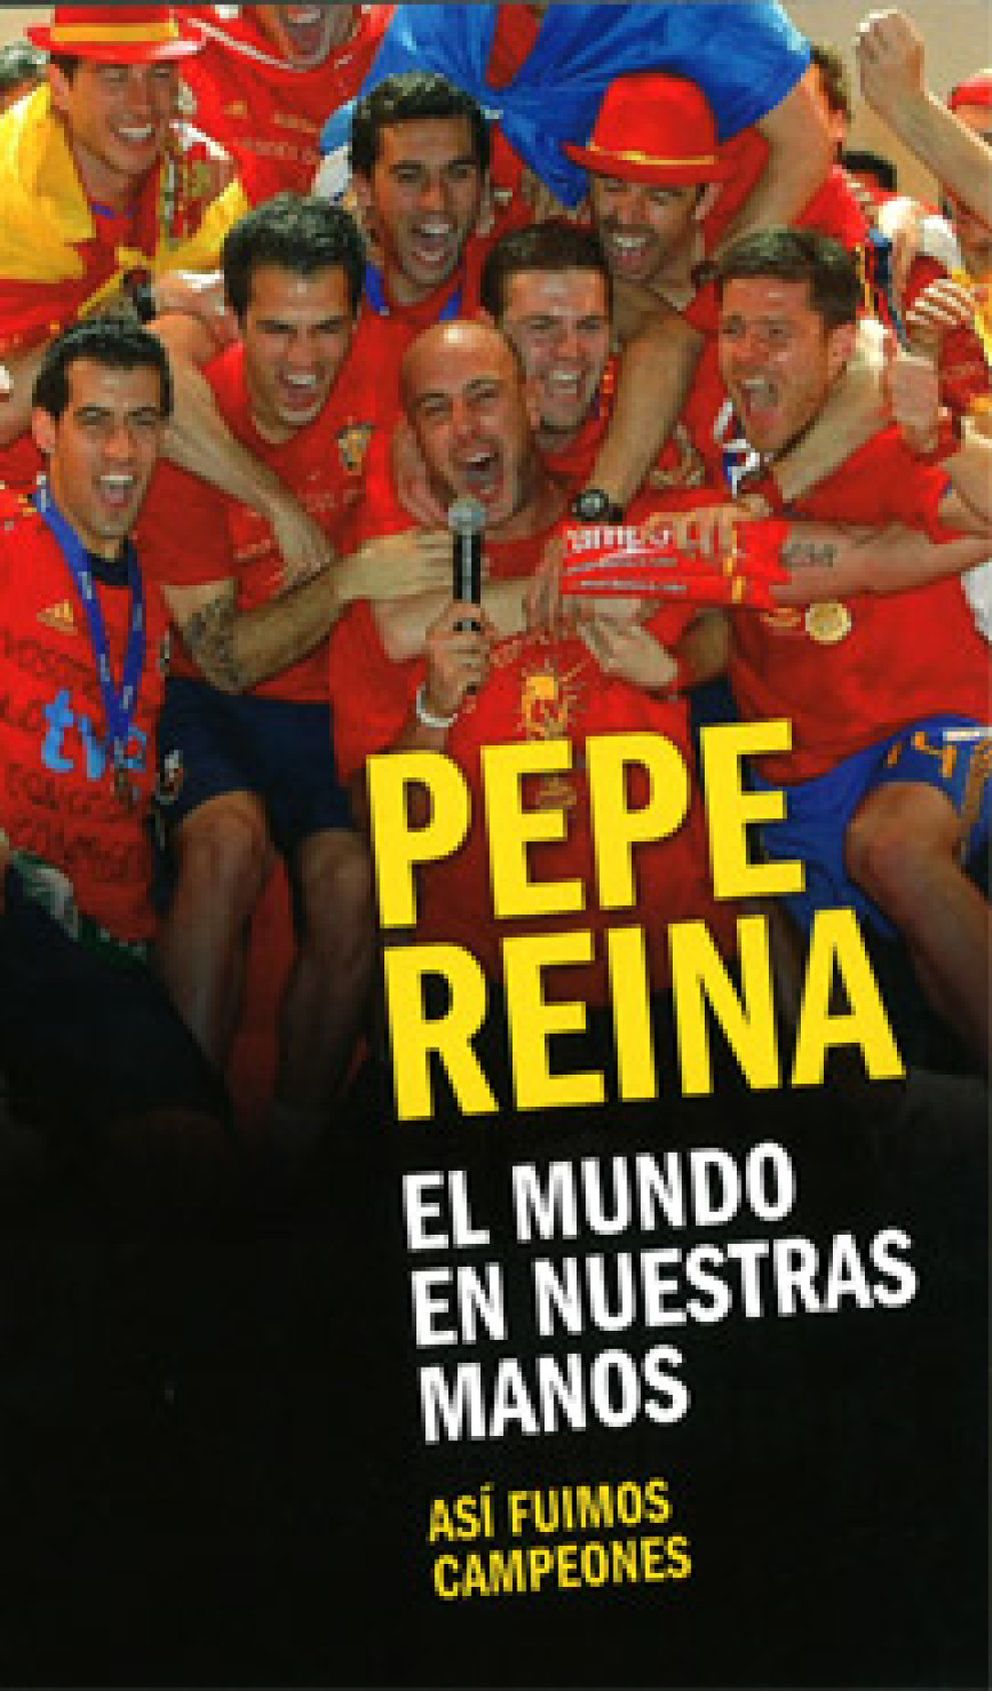 Foto: La época dorada del fútbol español desata la fiebre por las publicaciones deportivas